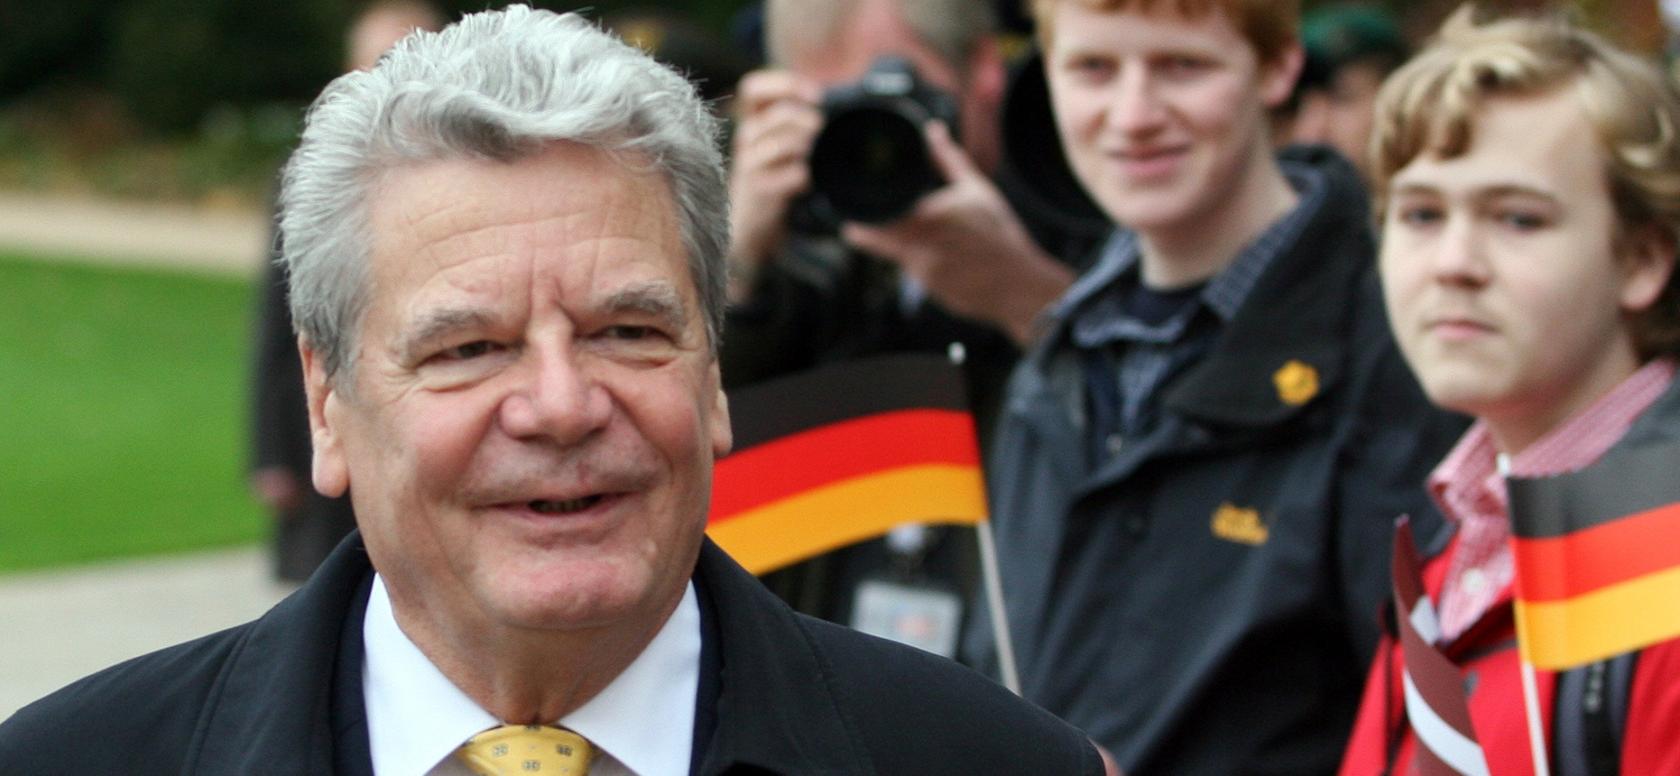 Hoher Besuch: Joachim Gauck kommt nach Nürnberg